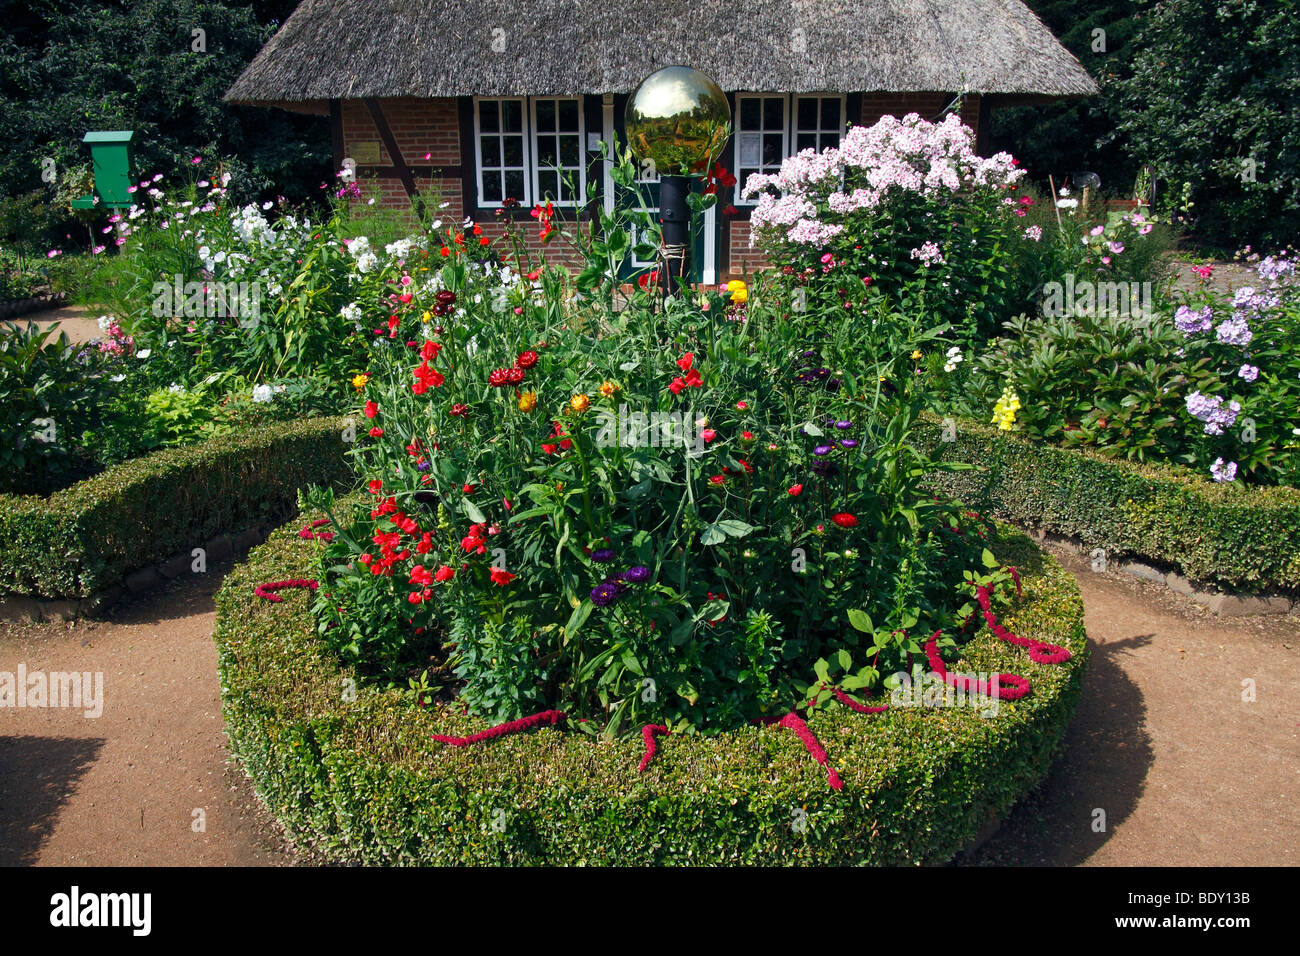 Basso tedesco giardino cottage con un rondel, siepe di bosso, giardino phlox (Phlox paniculata) e altri fiori estivi, Giardino Botanico Foto Stock